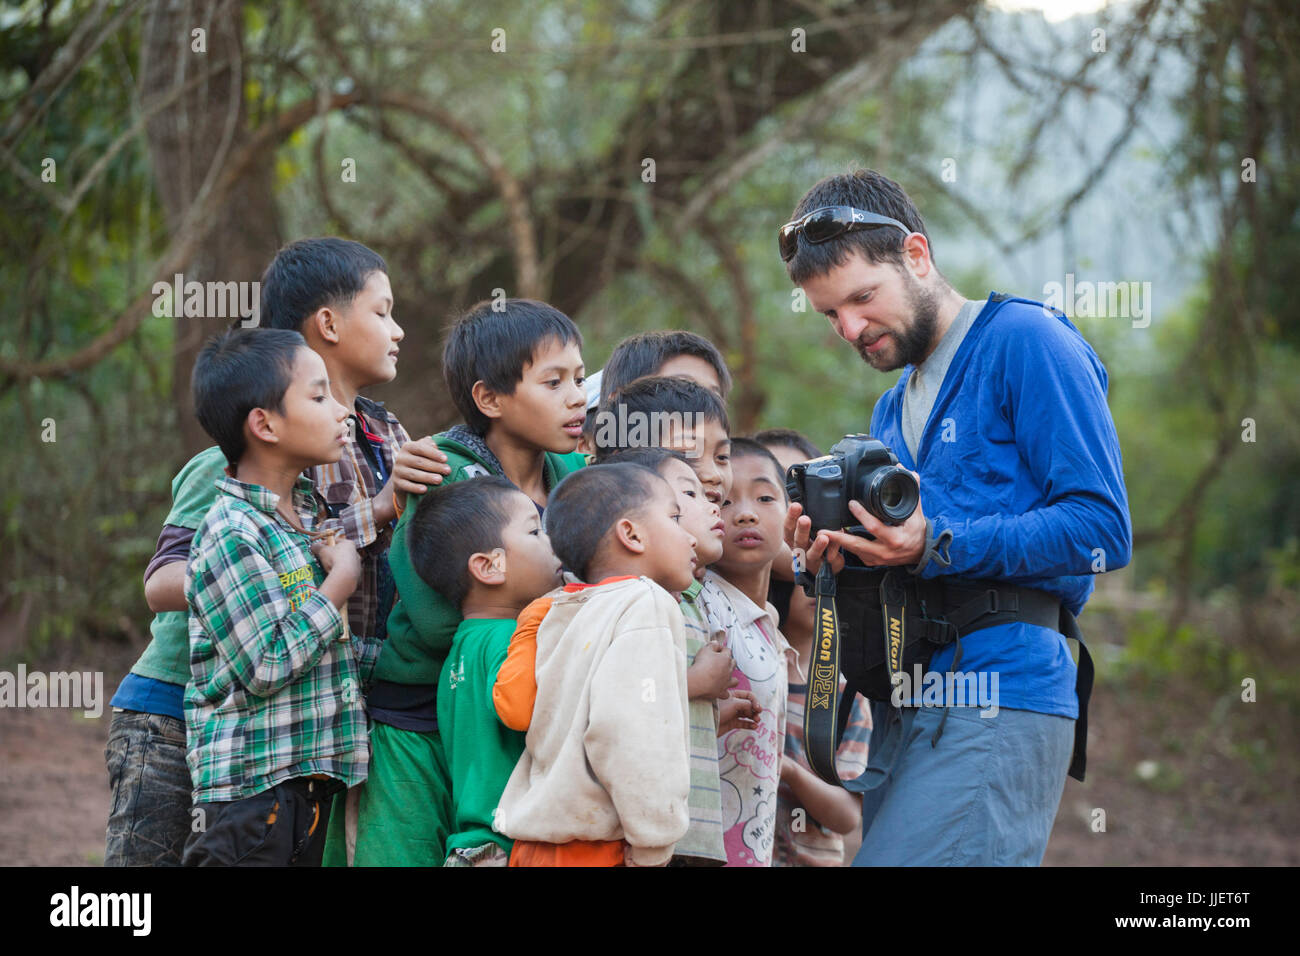 Robert Hahn zeigt Bilder von der Rückseite des seiner Digitalkamera zu einer Gruppe von neugierigen jungen versammelten sich am Strand in Muang Hut Hin, Laos. Stockfoto